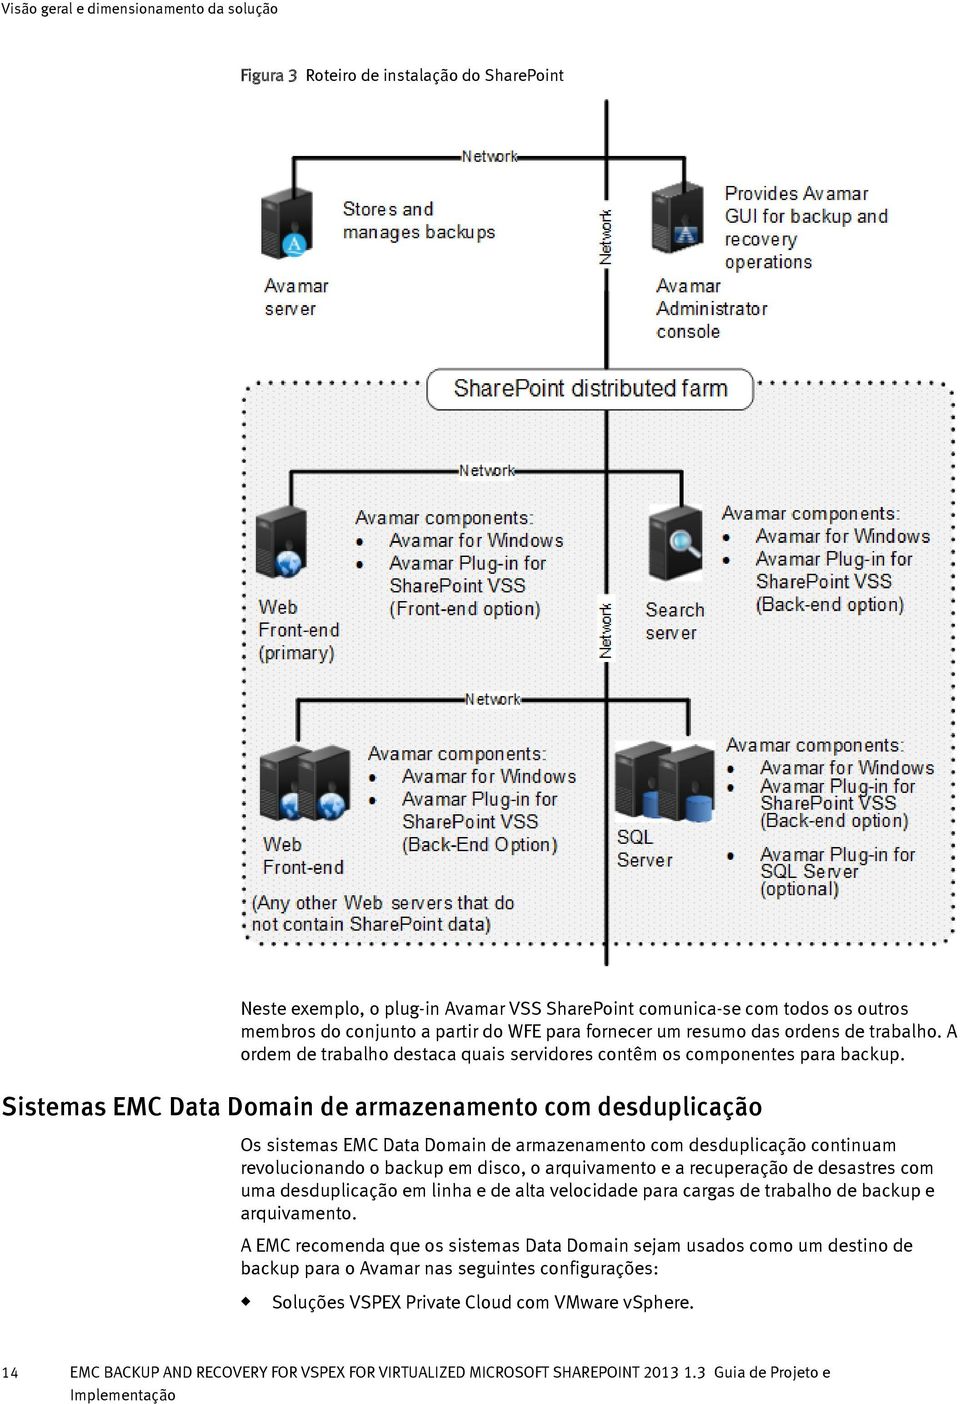 Sistemas EMC Data Domain de armazenamento com desdplicação Os sistemas EMC Data Domain de armazenamento com desdplicação continam revolcionando o backp em disco, o arqivamento e a recperação de